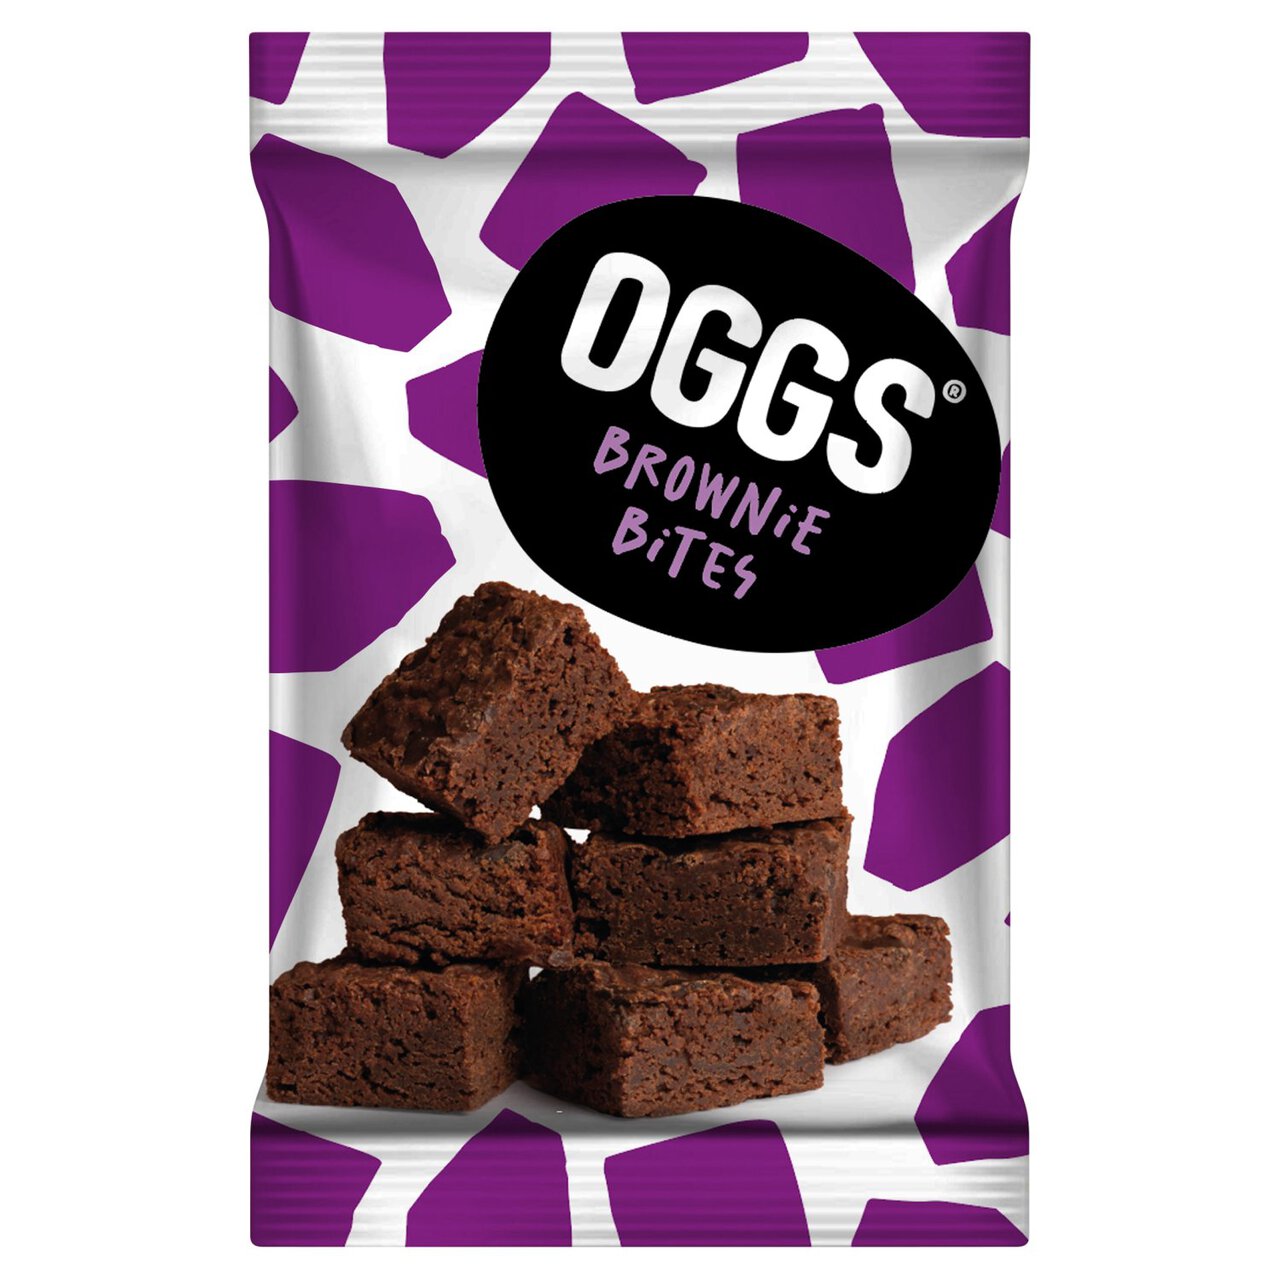 OGGS Brownie Bites 9 per pack